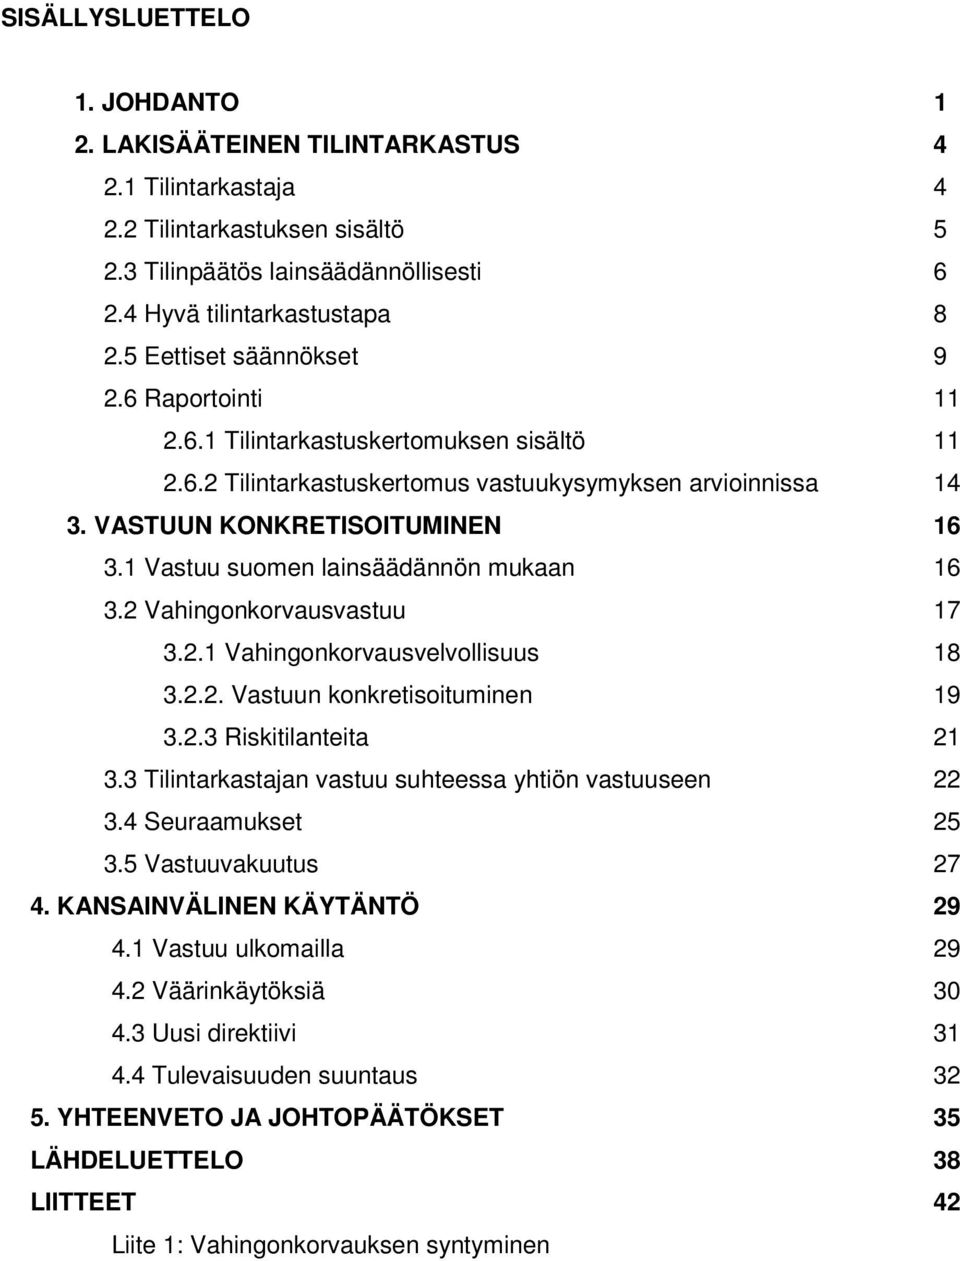 1 Vastuu suomen lainsäädännön mukaan 16 3.2 Vahingonkorvausvastuu 17 3.2.1 Vahingonkorvausvelvollisuus 18 3.2.2. Vastuun konkretisoituminen 19 3.2.3 Riskitilanteita 21 3.